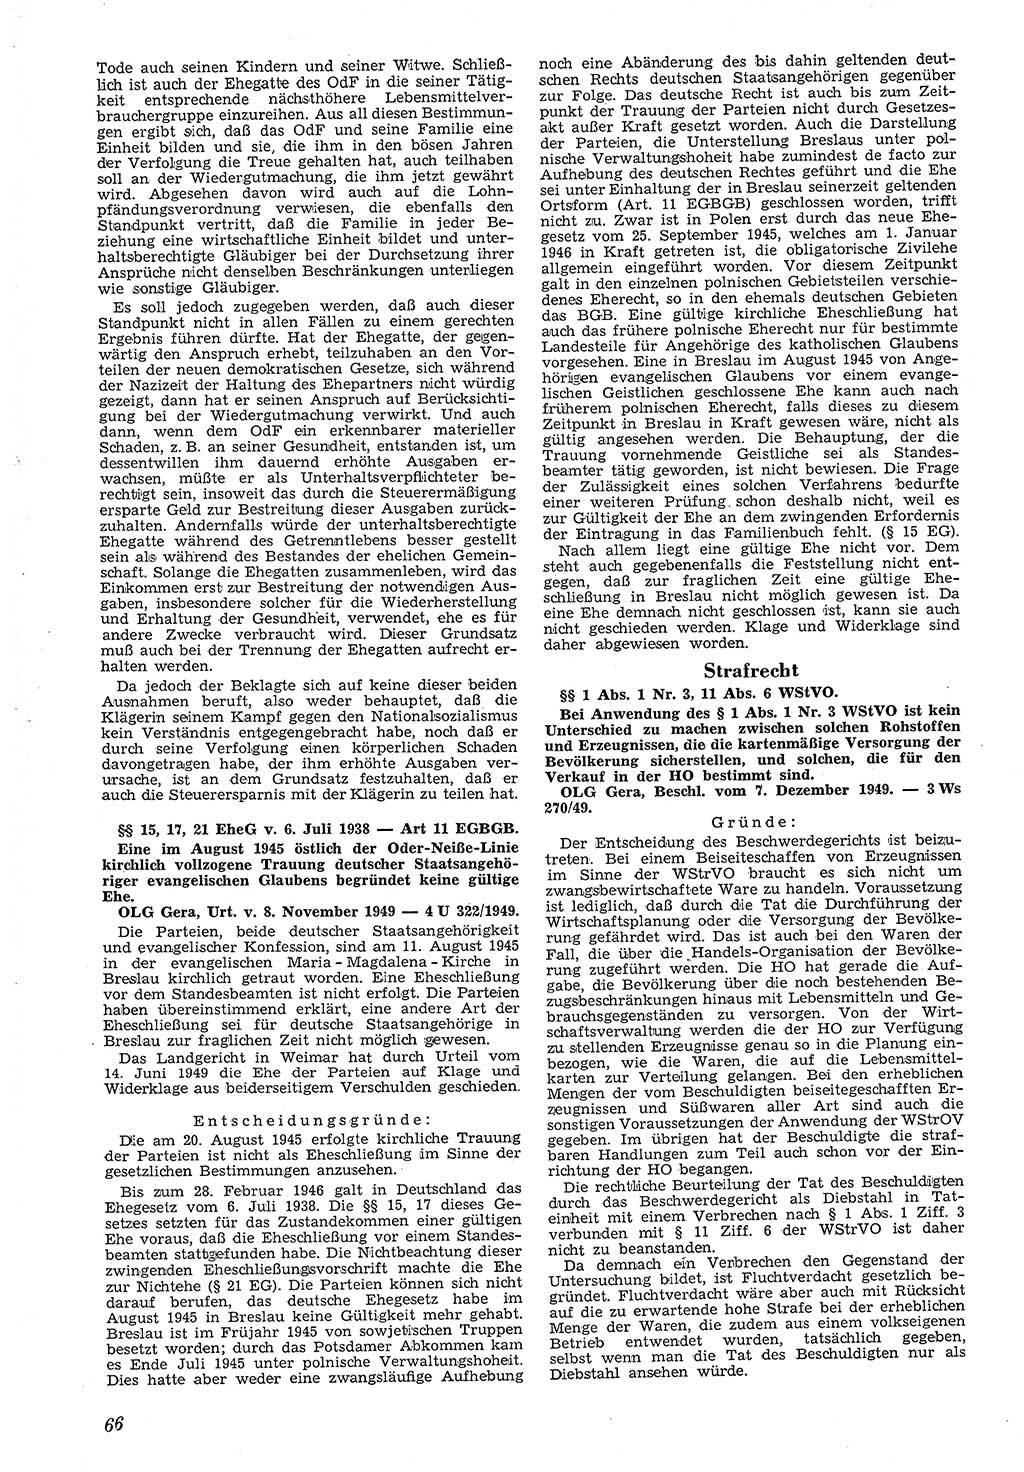 Neue Justiz (NJ), Zeitschrift für Recht und Rechtswissenschaft [Deutsche Demokratische Republik (DDR)], 4. Jahrgang 1950, Seite 66 (NJ DDR 1950, S. 66)